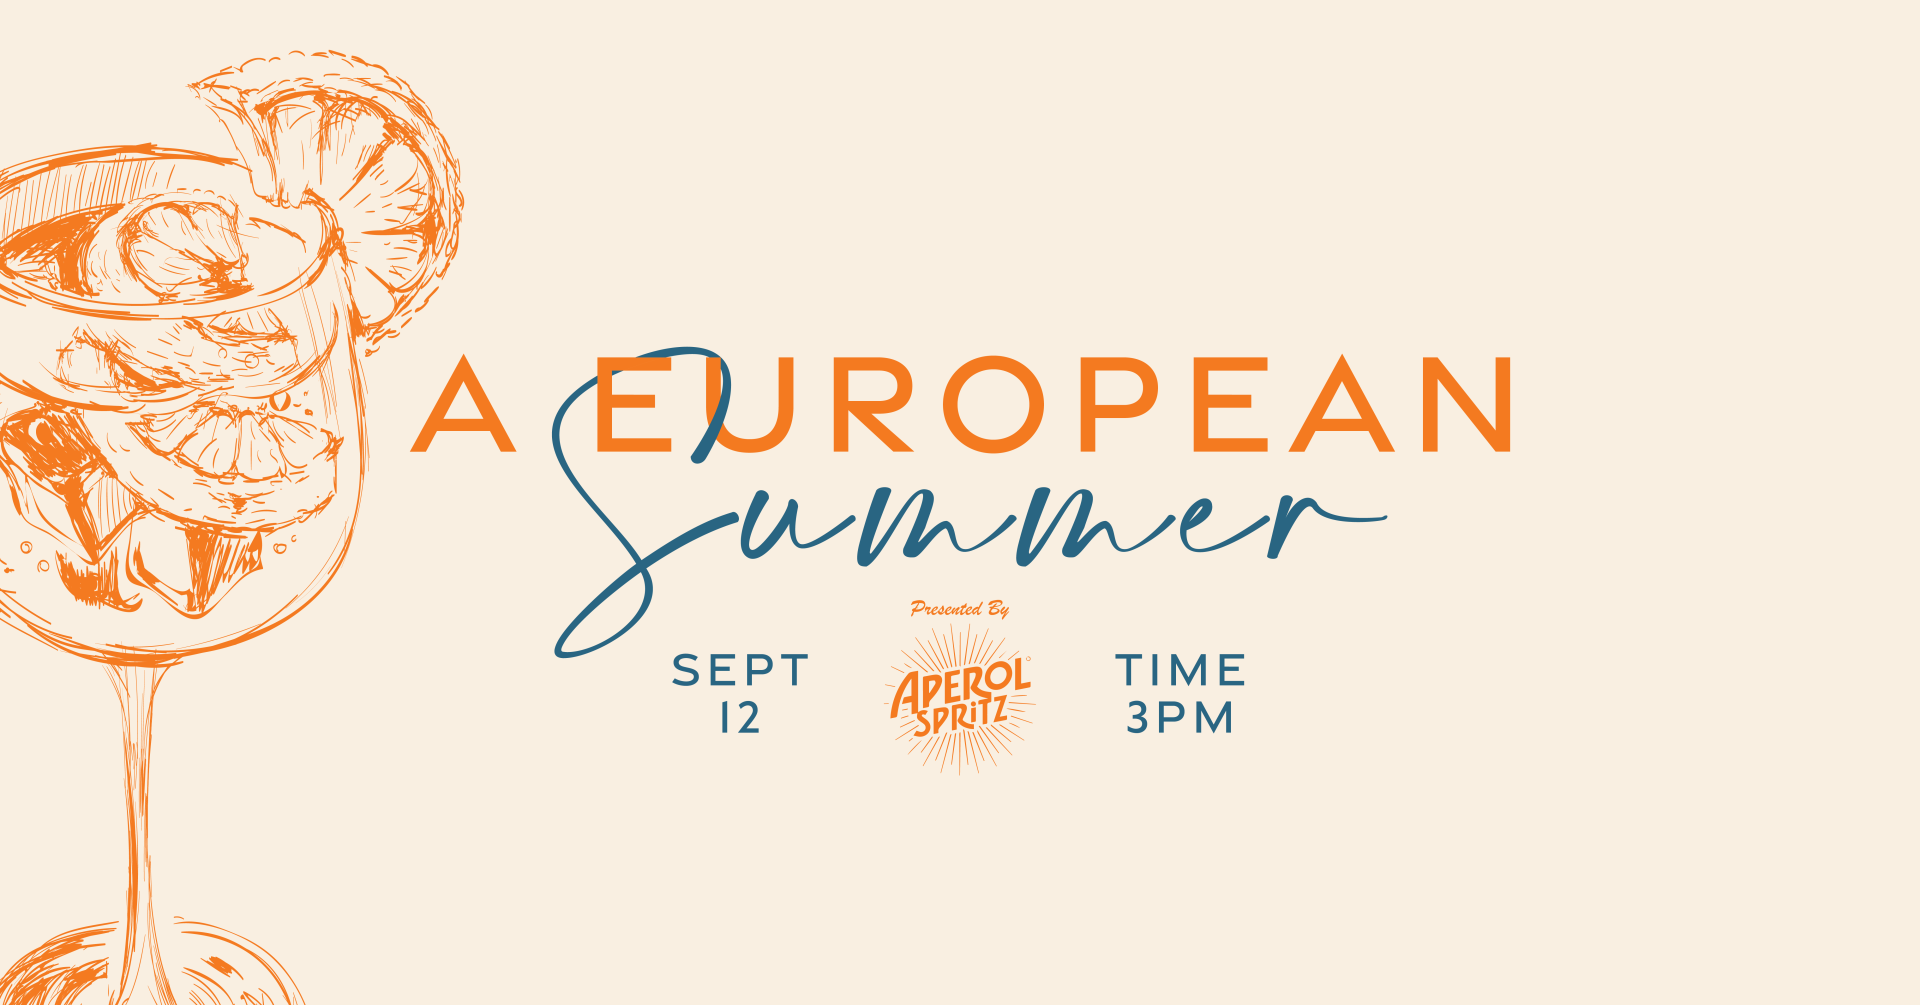 A European Summer presented by Aperol & Firerock